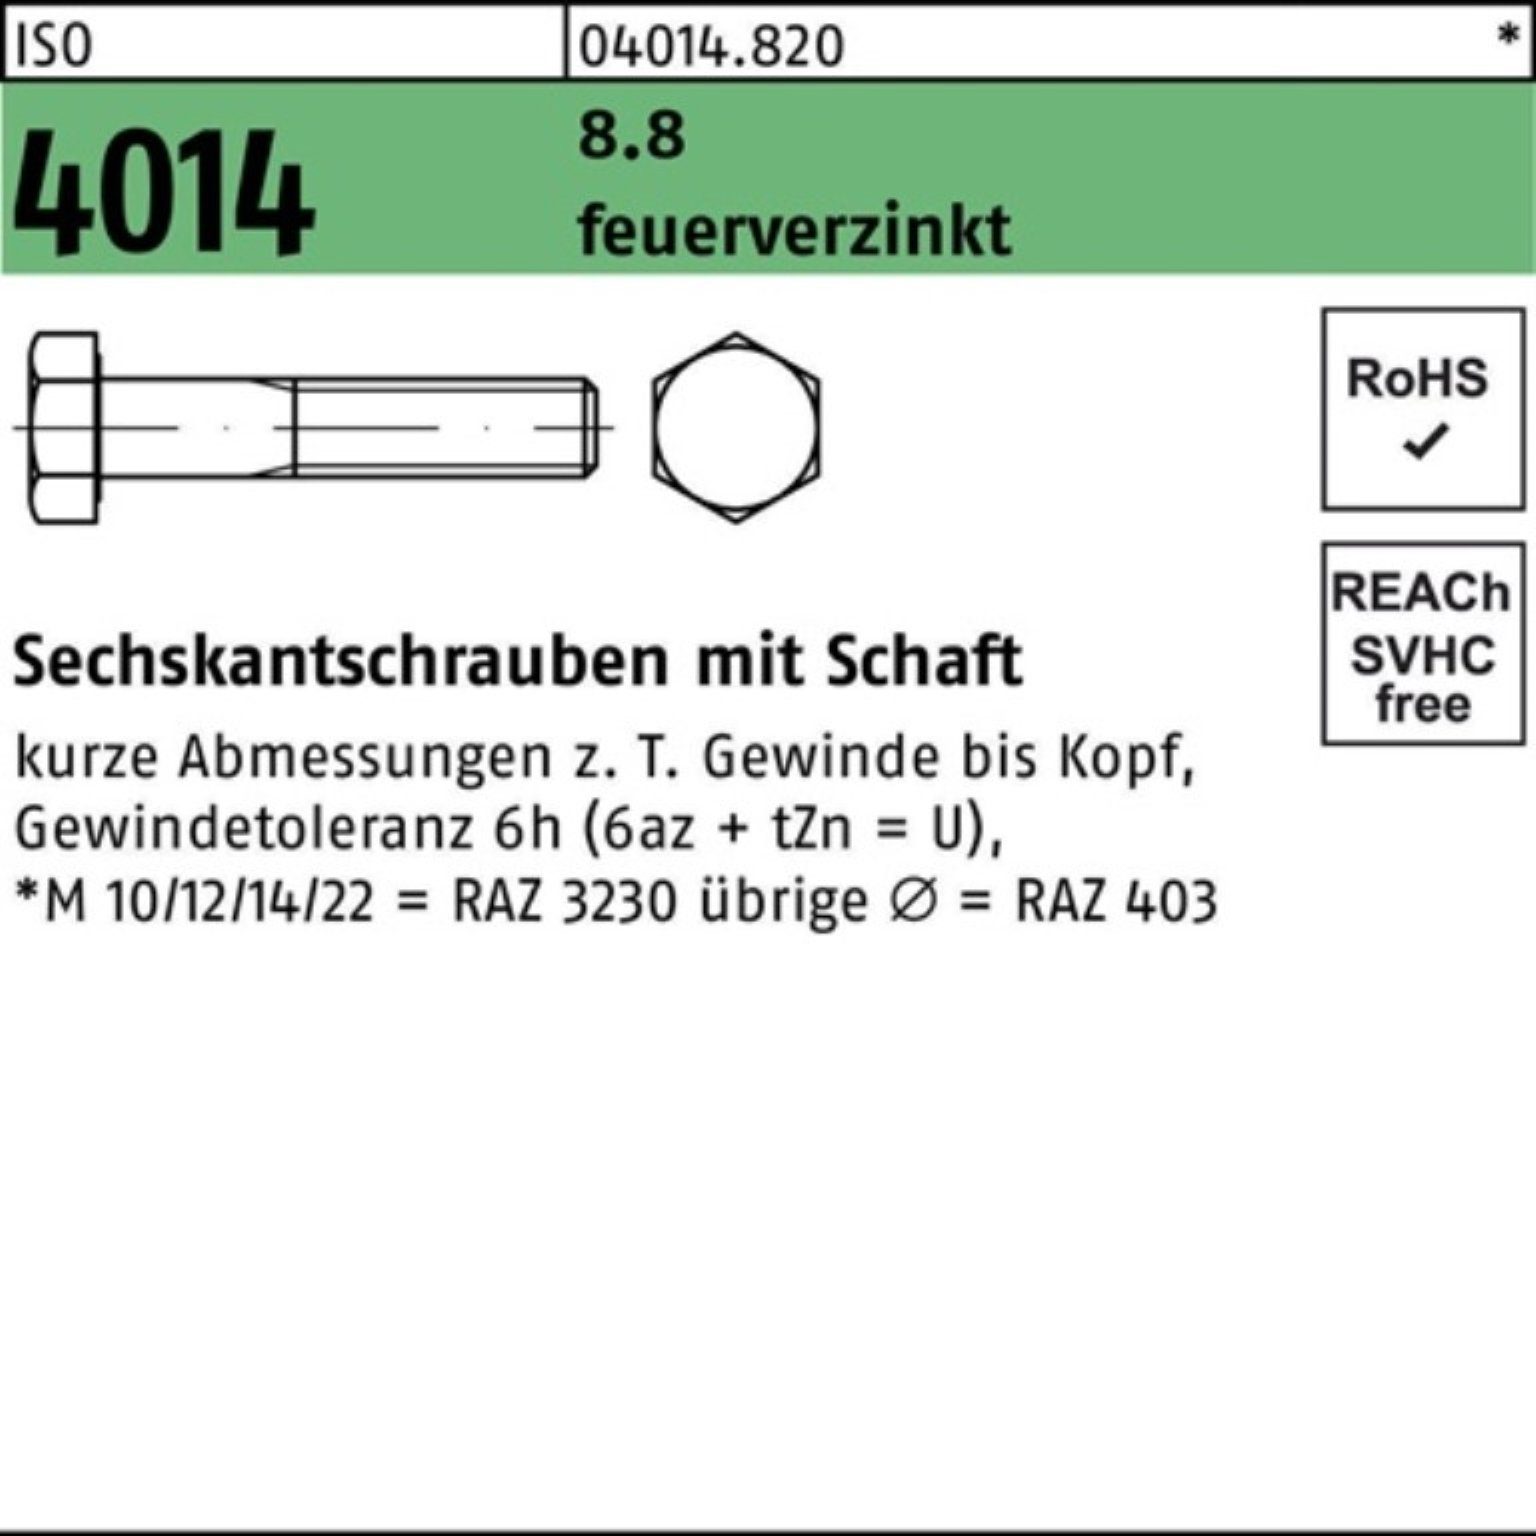 ISO Sechskantschraube 4014 100er Schaft 8.8 Bufab M20x Sechskantschraube Pack 1 feuerverz. 260